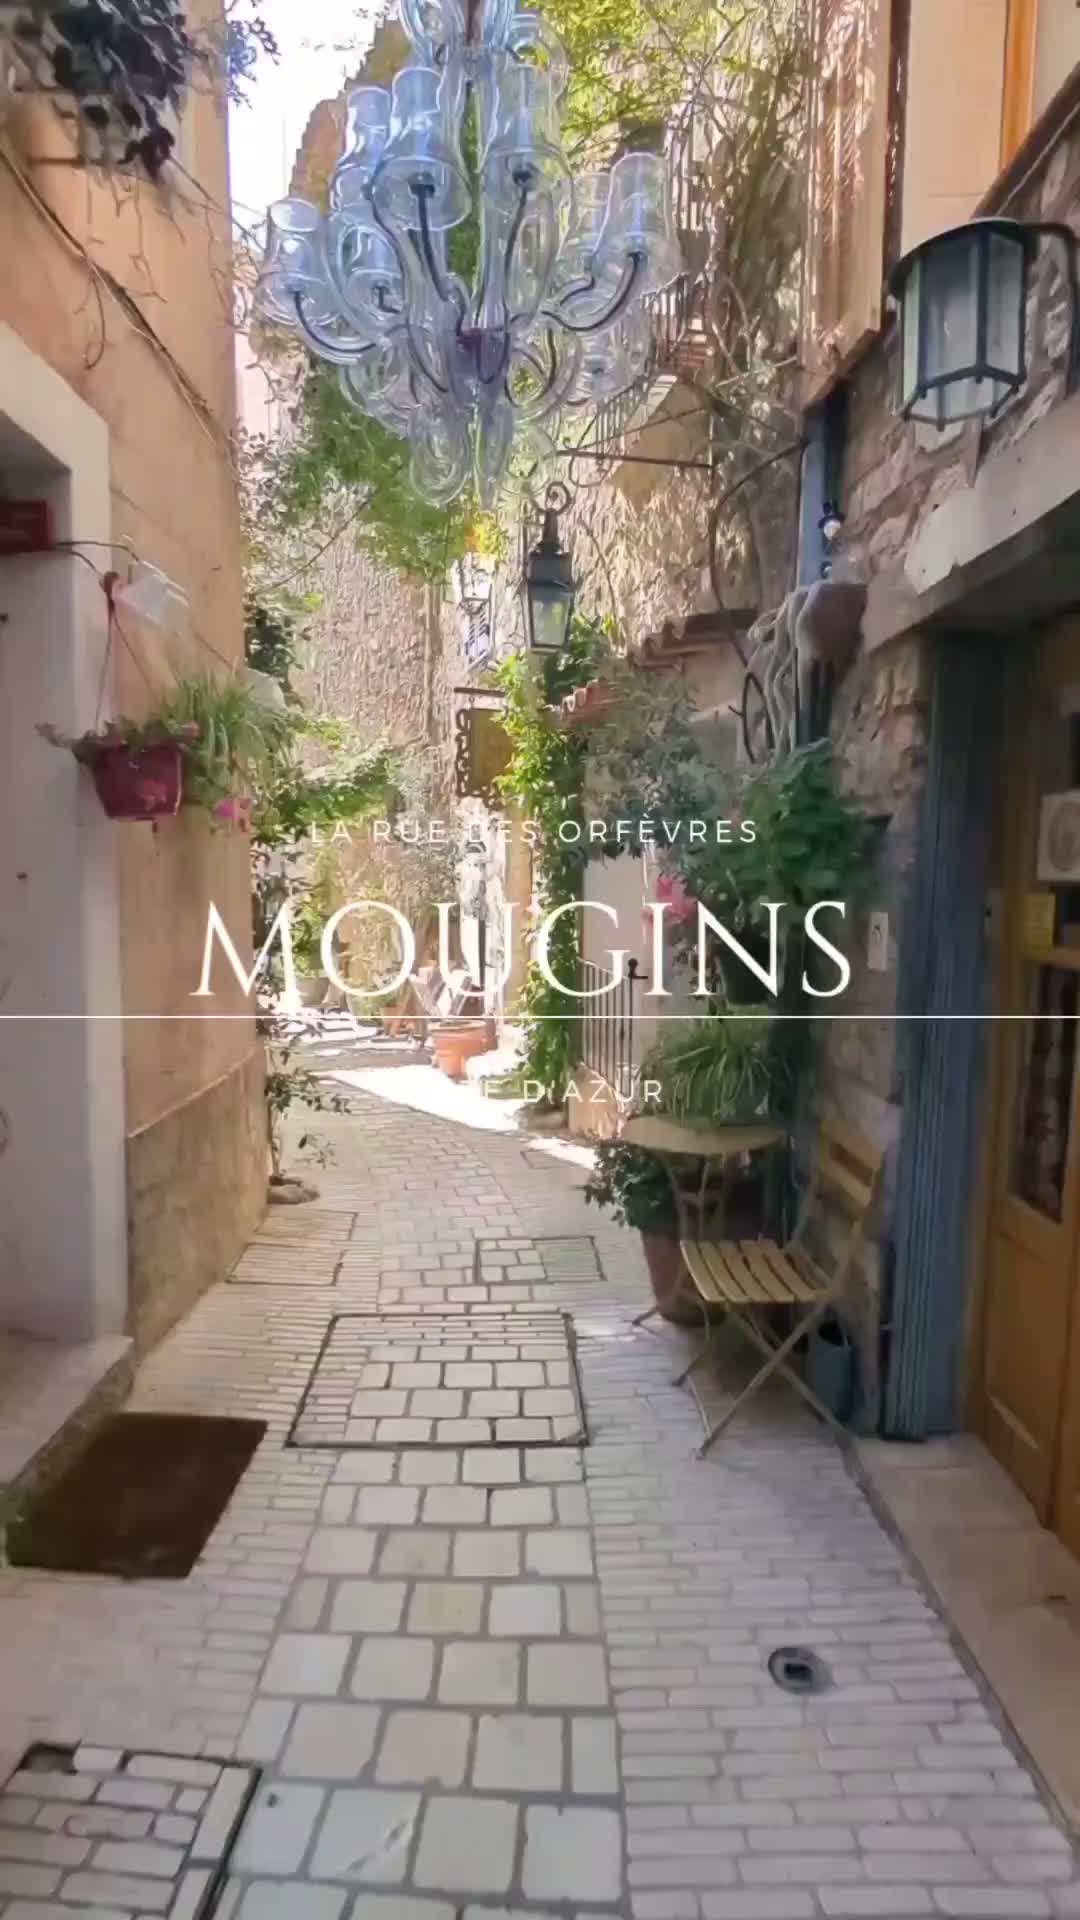 [ MOUGINS ]

Plongez au cœur de l'histoire et de la magie du village de Mougins!

Situé dans les Alpes-Maritimes, en plein cœur de la Côte d'Azur, ce village médiéval est charmant et pittoresque, bien qu'un peu à l'écart des foules de la Riviera. 

Découvrez ses petites rues, ses bâtiments anciens et sa magnifique nature qui offrent aux visiteurs une expérience inoubliable ! 

#Mougins
#CoteDAzur
#Provence
#FrenchRiviera
#VillageLife
#CoteDAzurFrance
#VisitFrance
#ExploreFrance
#TravelMougins
#BeautifulMougins
#VieuxVillage
#Gastronomie
#Art
#Culture
#Balades
#Architecture
#HistoricPlaces
#ExploreFrance
#BeautifulDestinations
#NatureLovers
#FrenchCulture
#TravelFrance
#FranceTravel
#SouthOfFrance
#VisitCoteDAzur
#PicOfTheDay
#InstaMougins
#FrenchVillage
#DiscoverFrance
#MouginsArtists